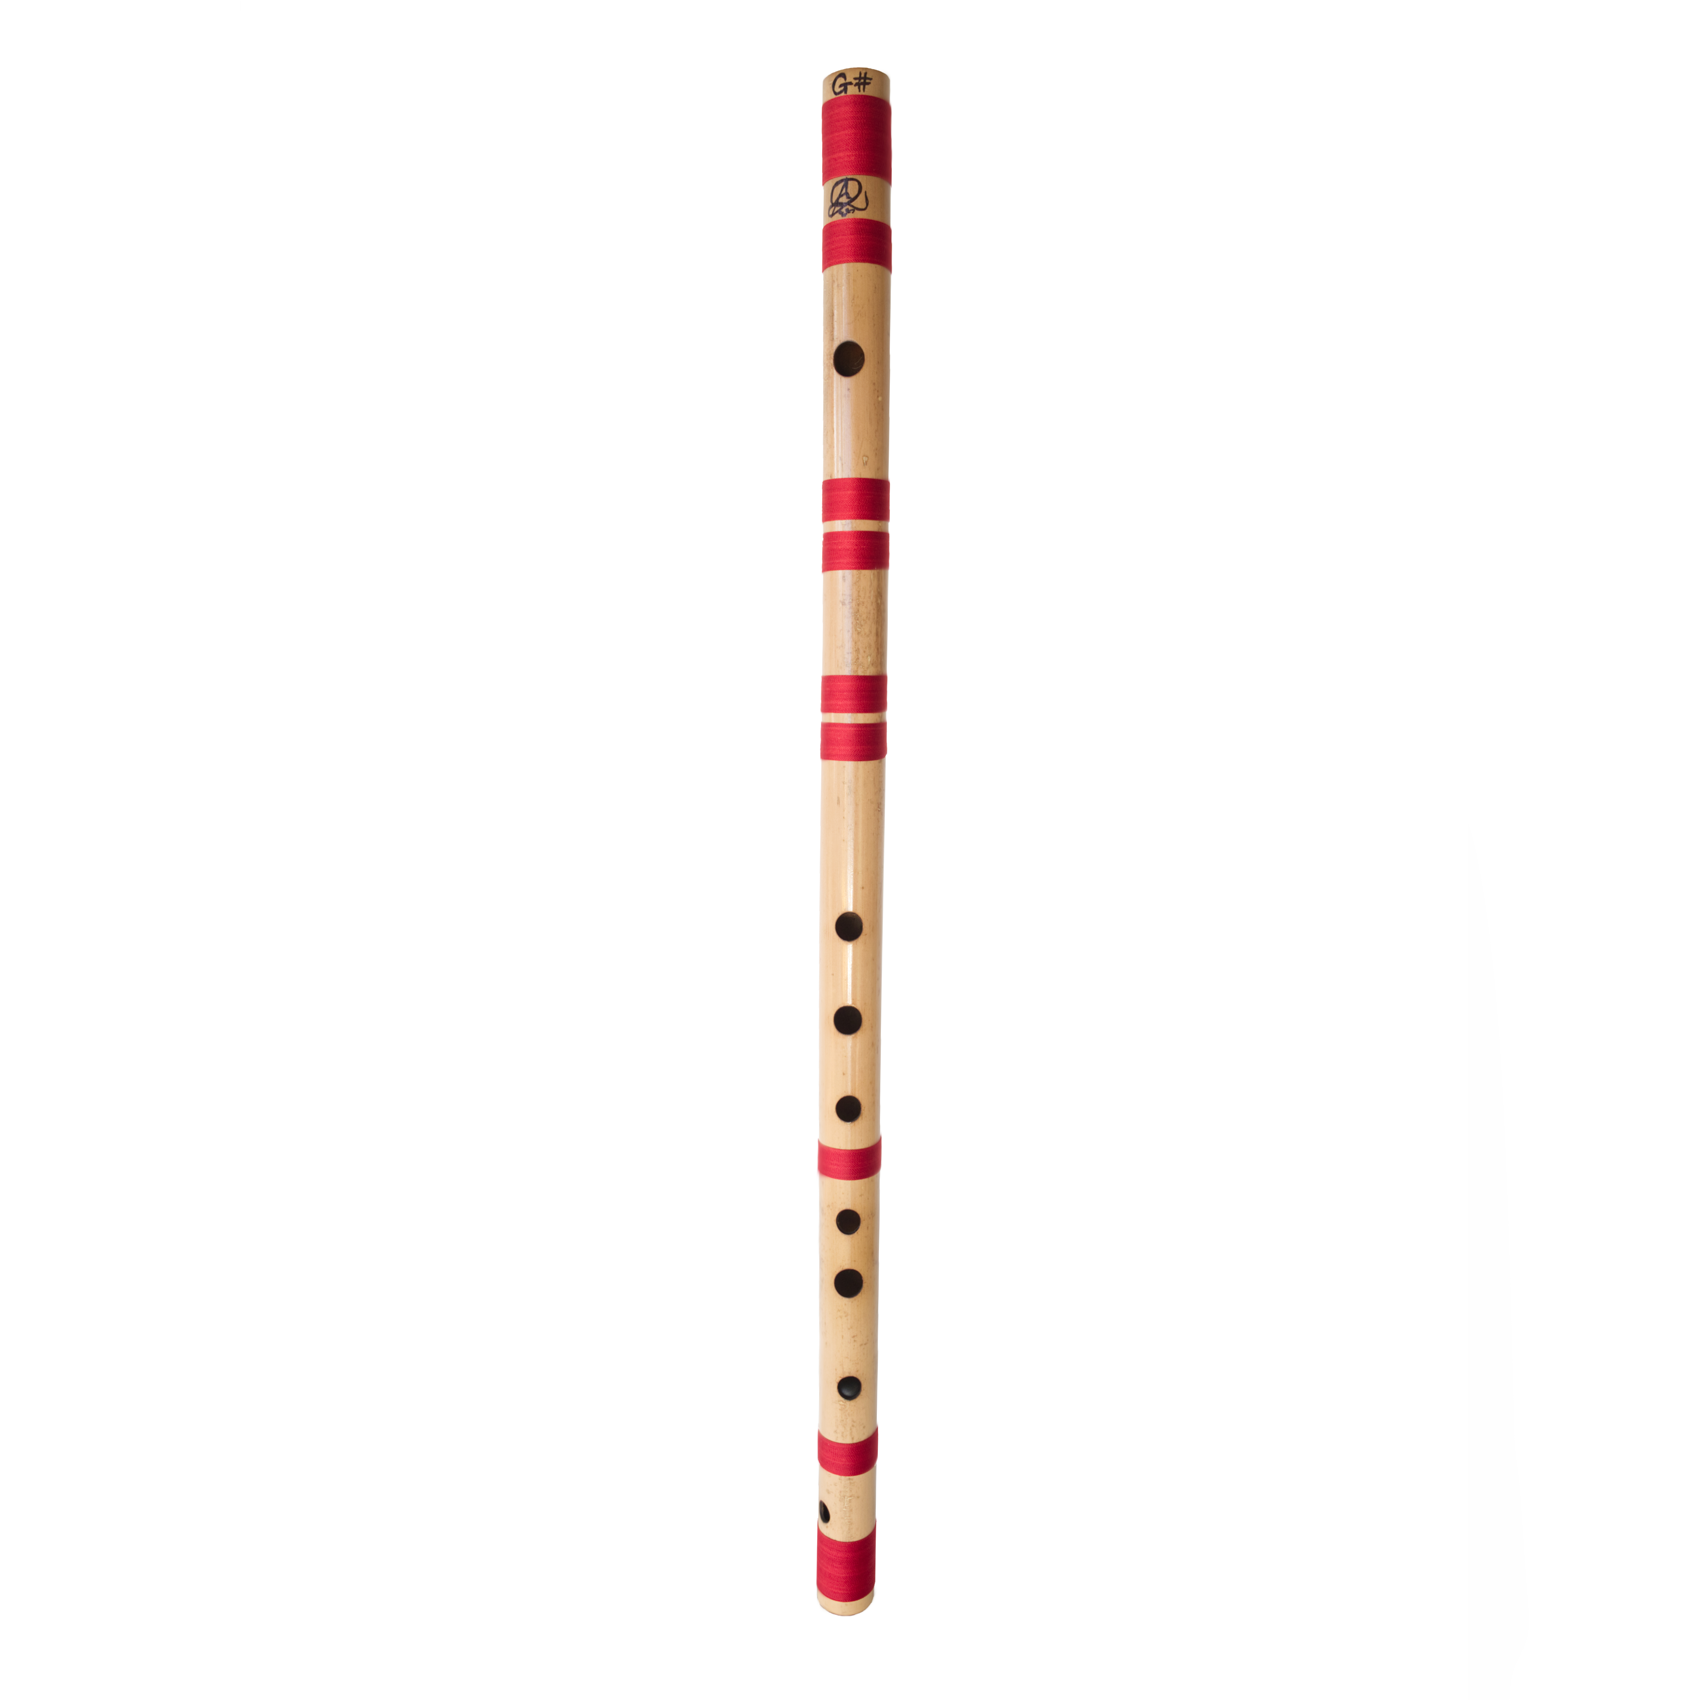 Bansuri Flute - Dhotre Flutes G#